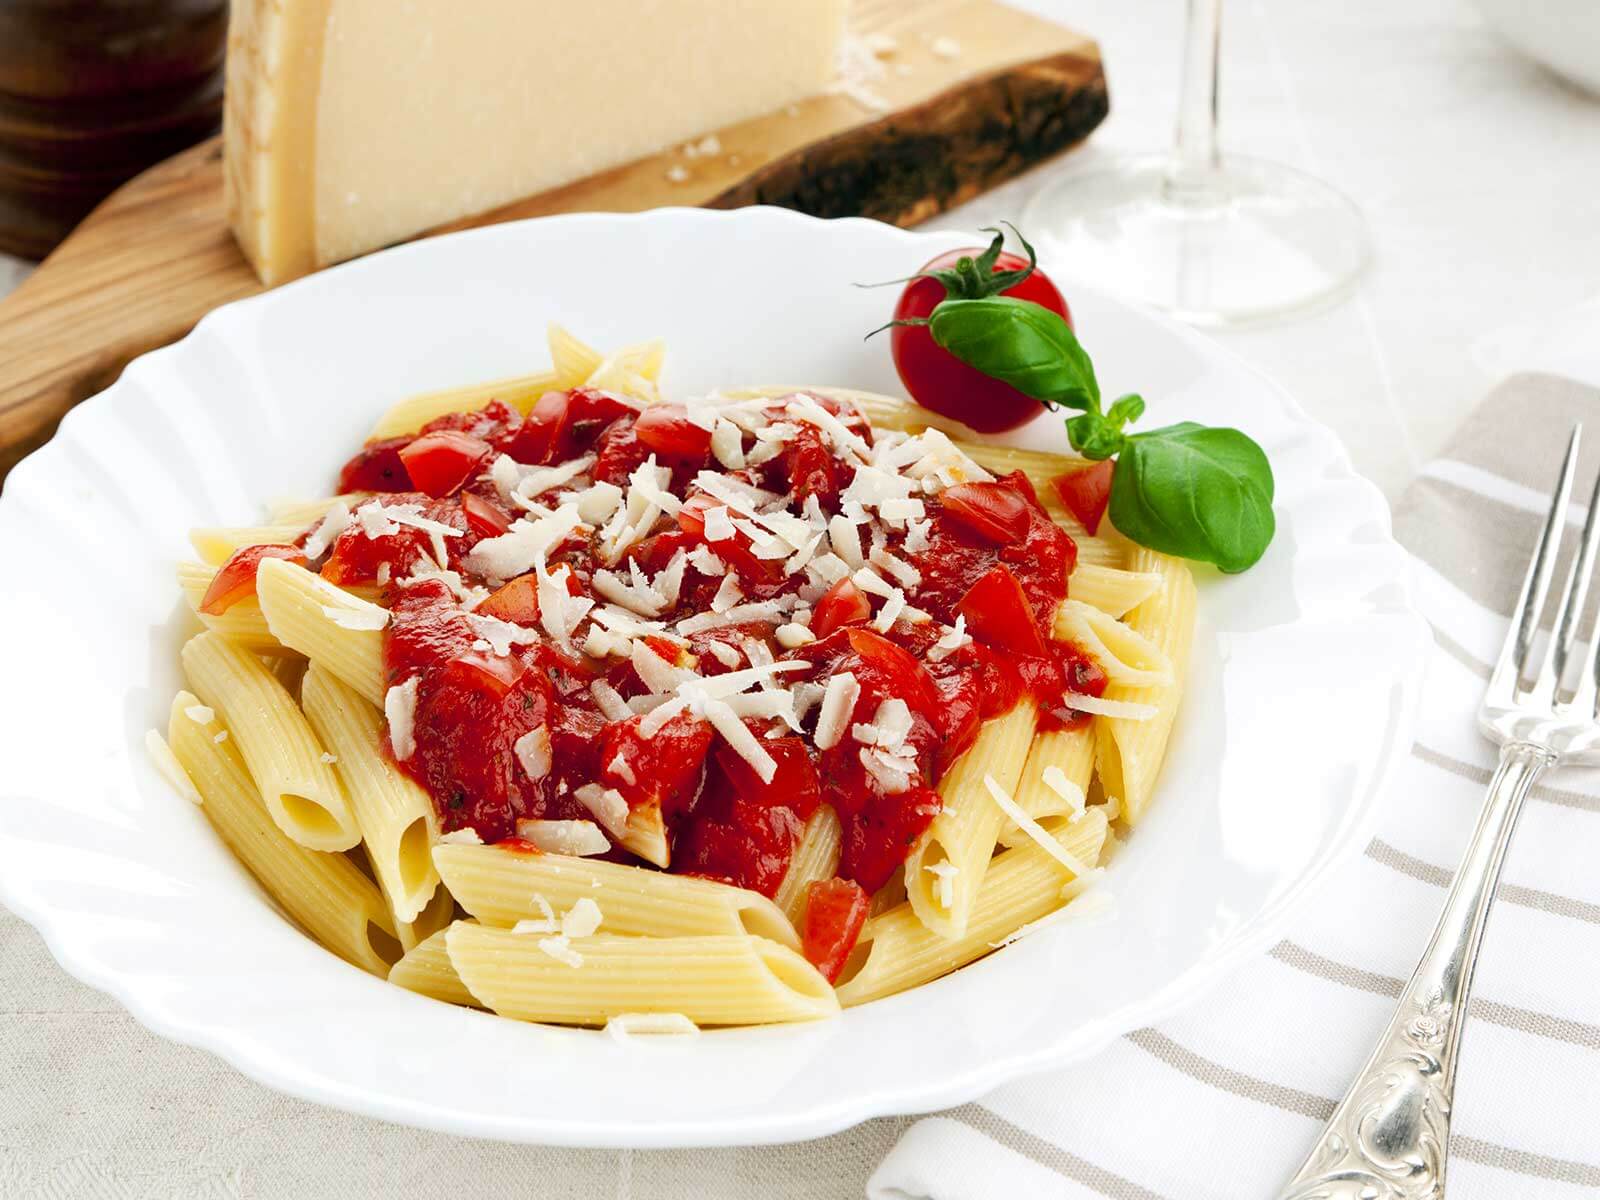 Nudelrezept von Tress: Penne mit leckerer Tomatensoße und geriebenem Käse